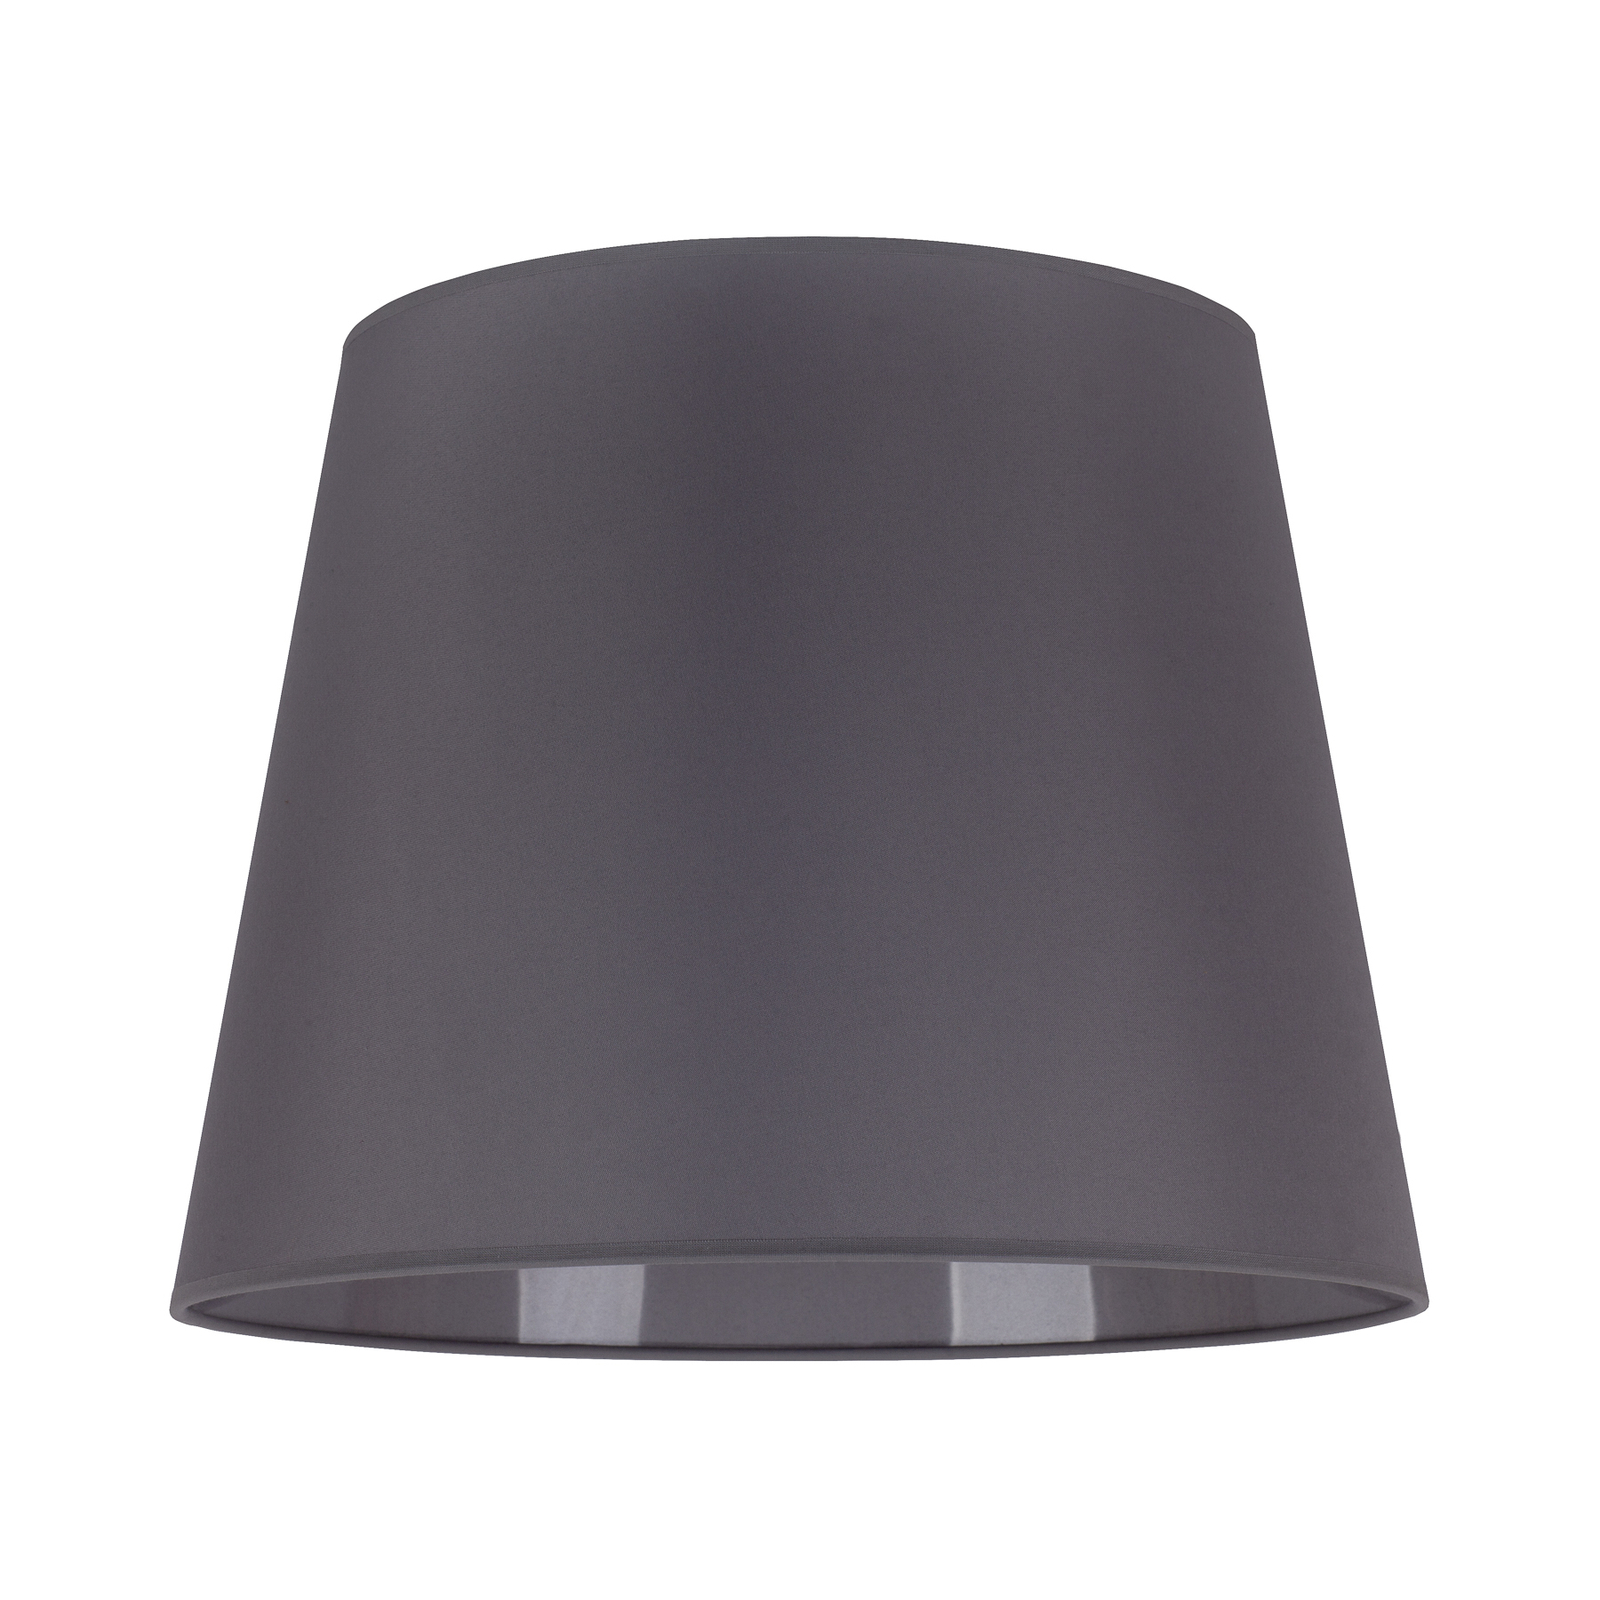 Lampeskjerm Classic L til hengelamper, grå